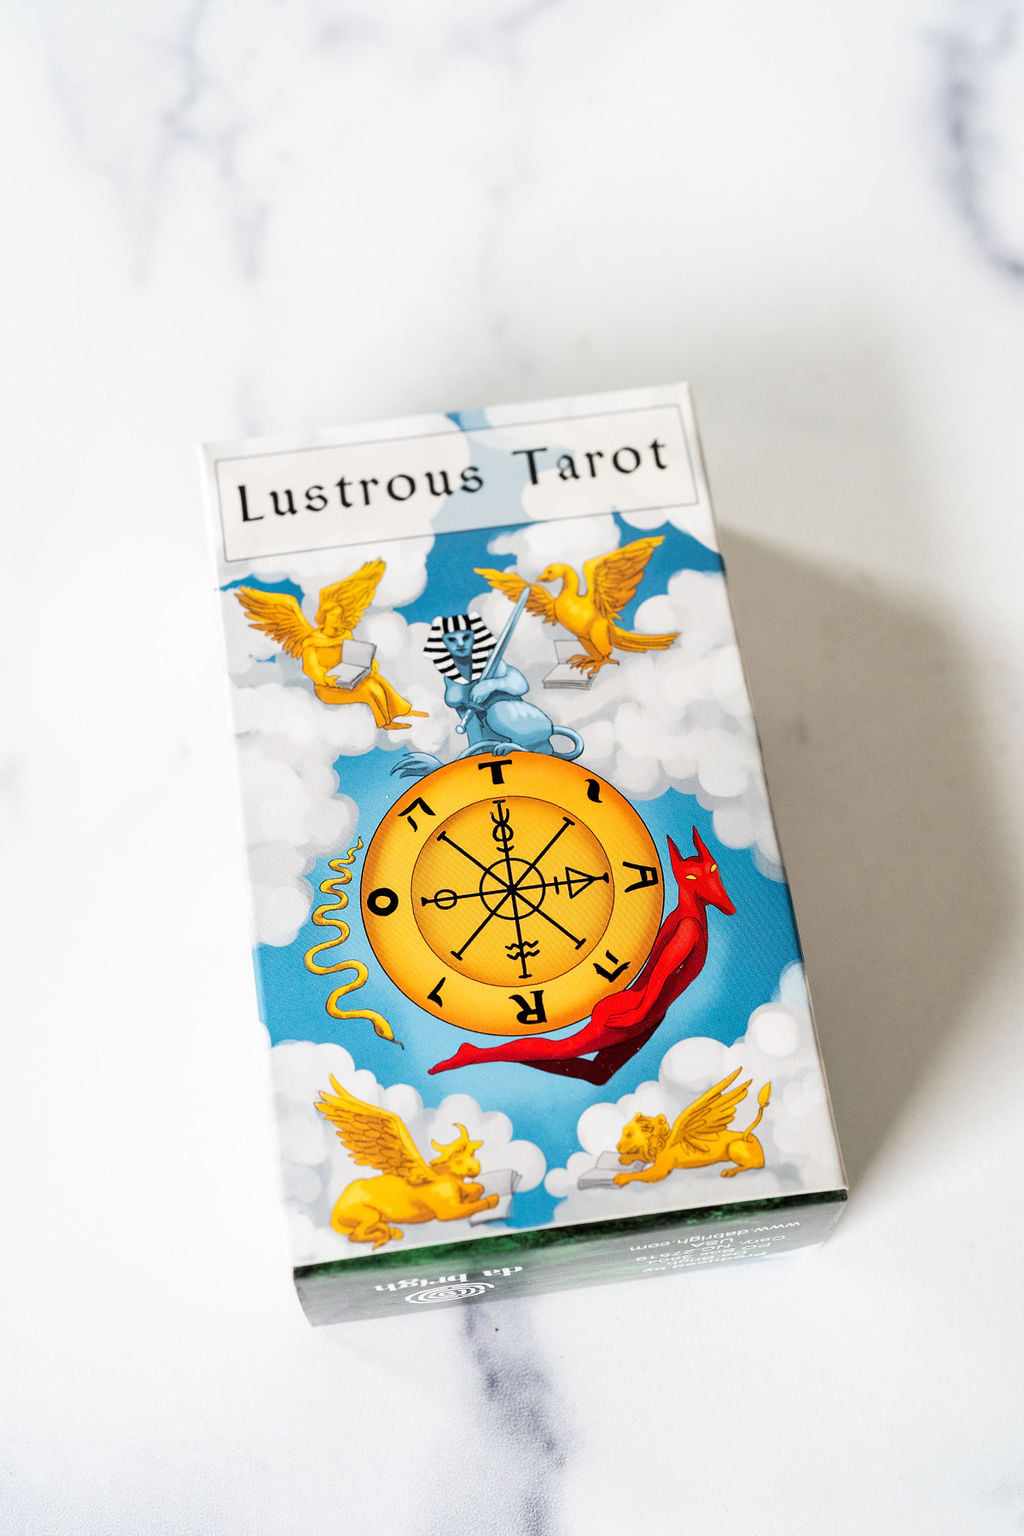 Lustrous Tarot